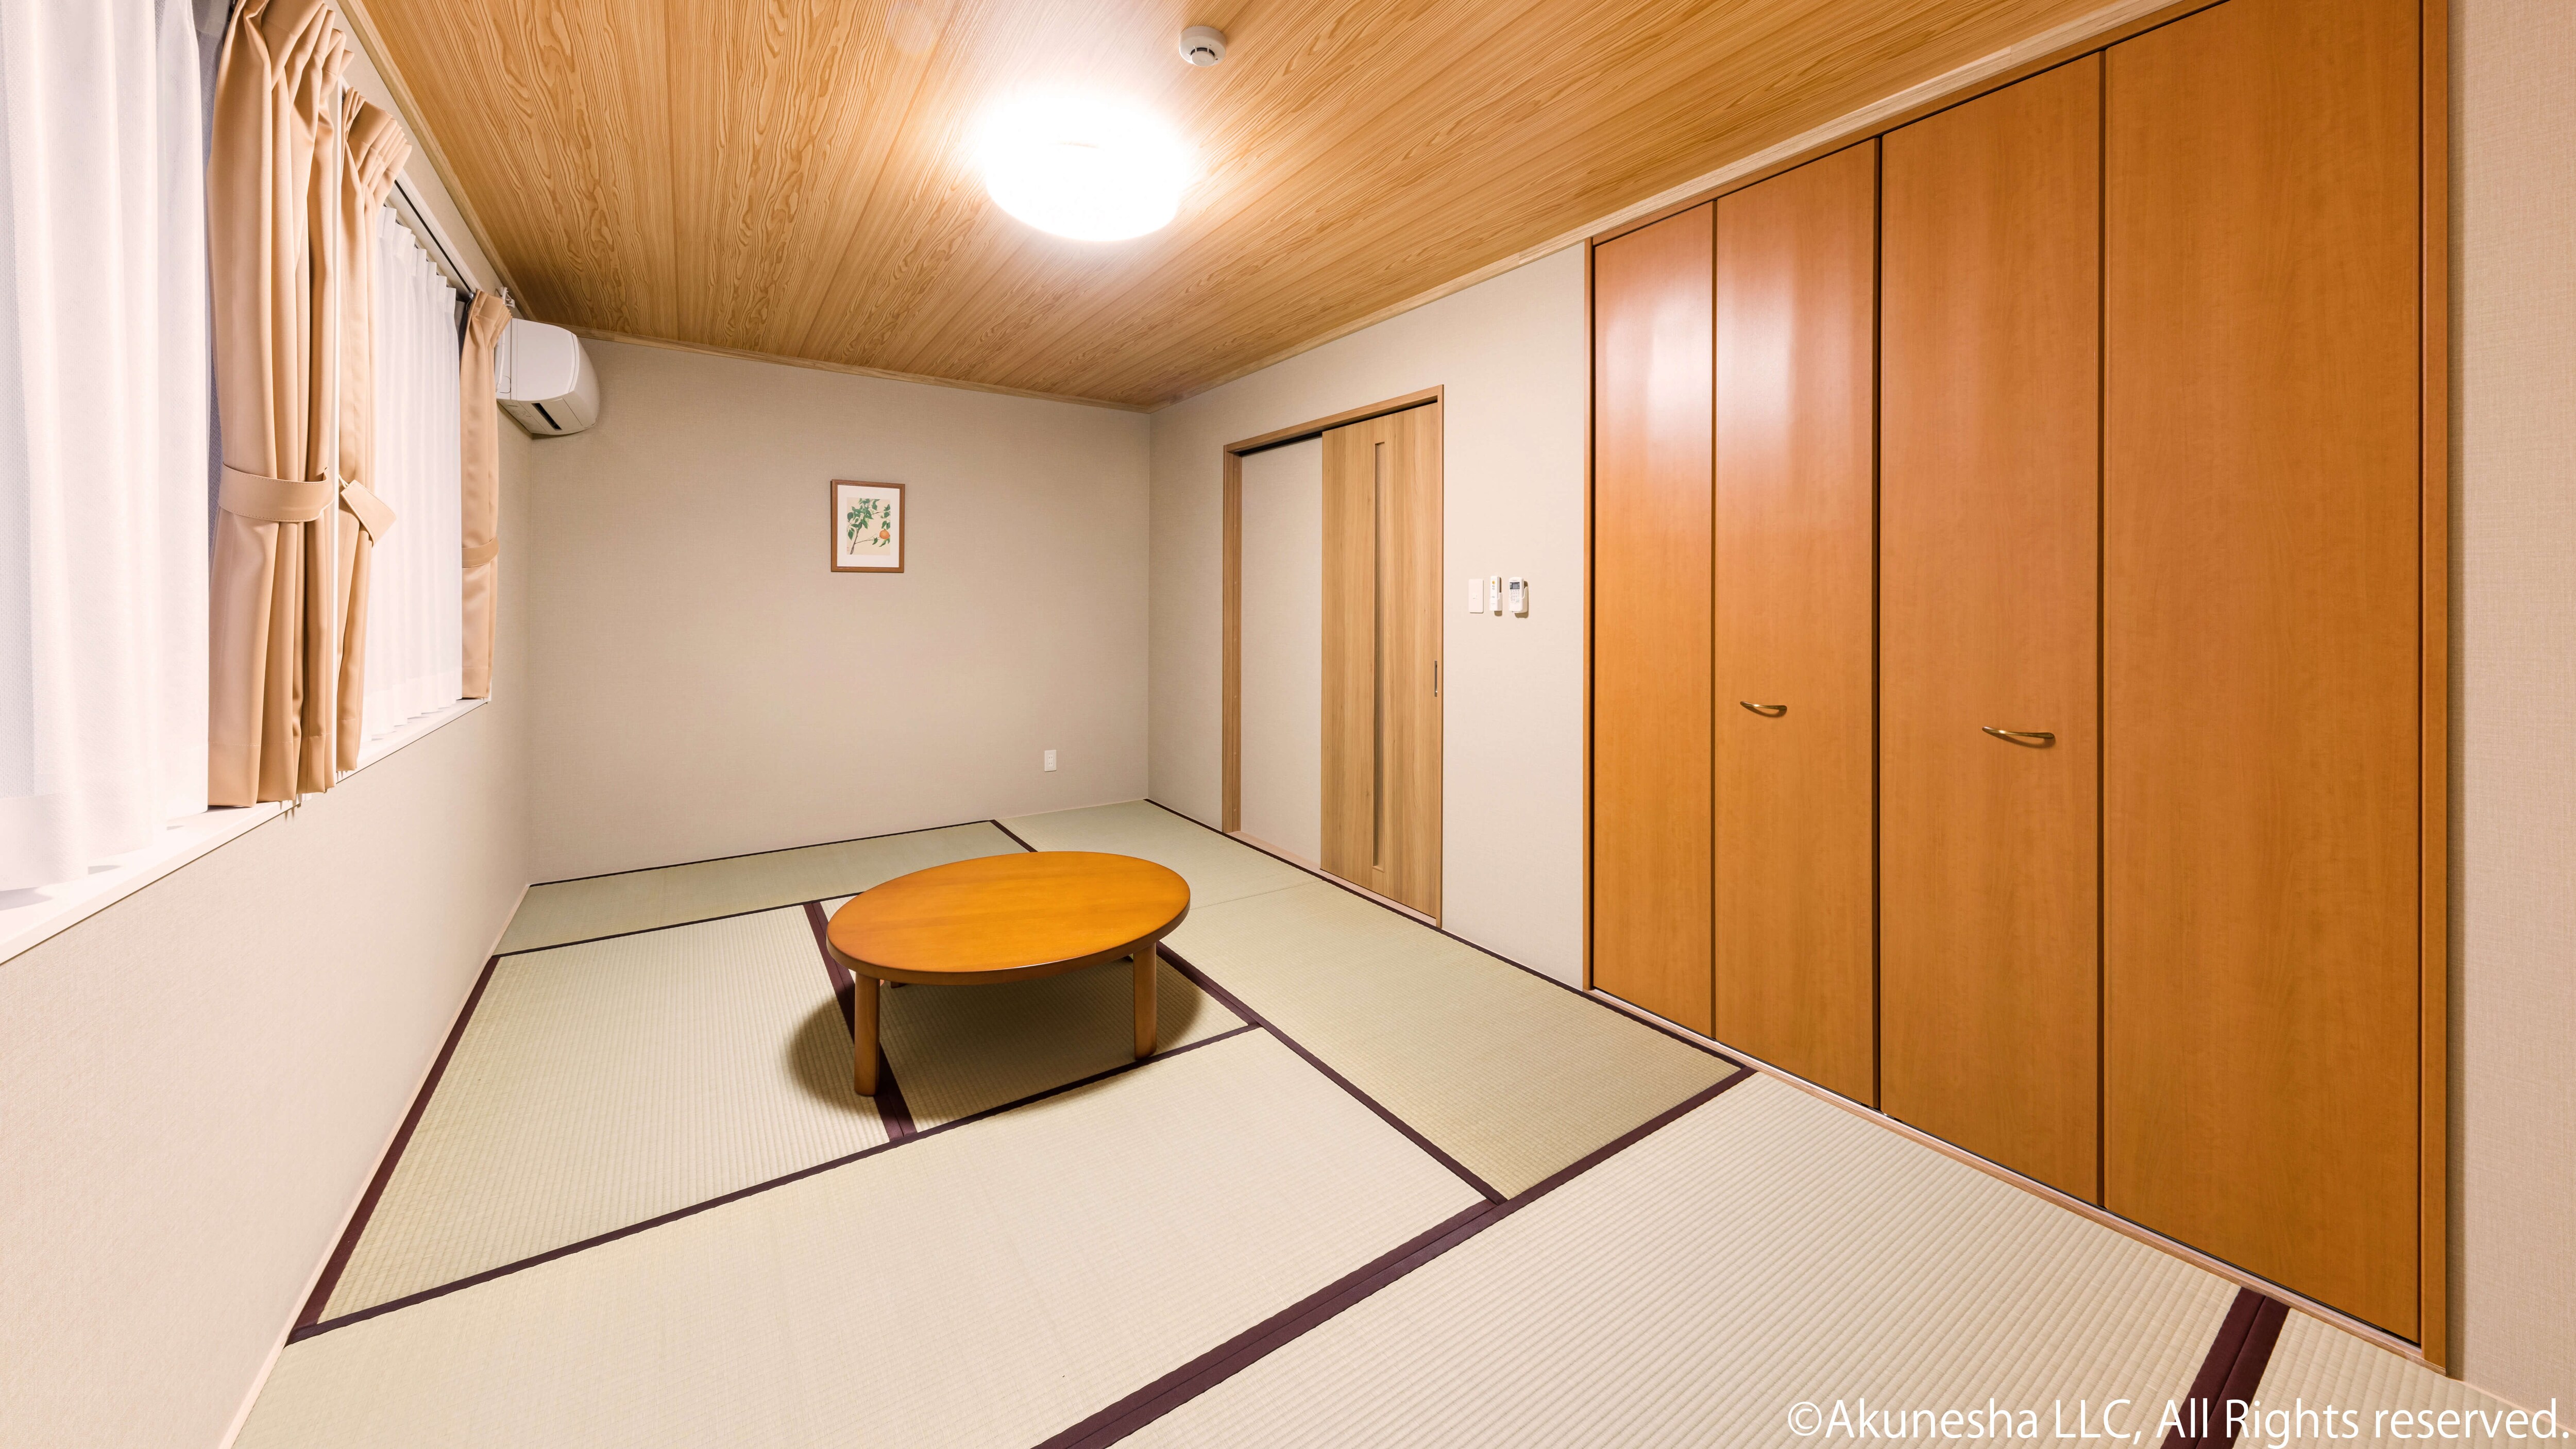 Japanese-style room 9 tatami mats at night